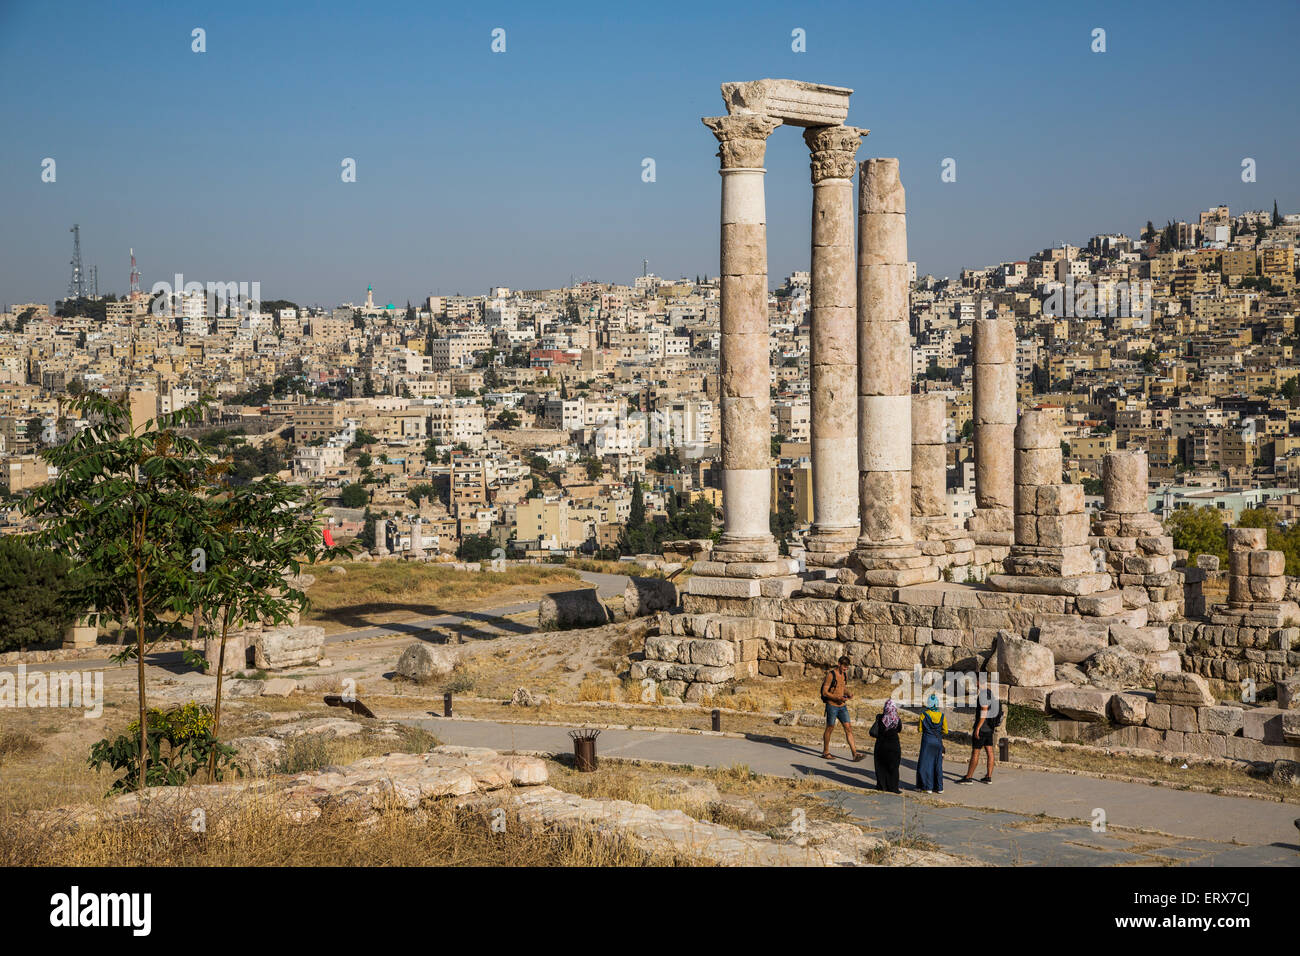 Temple of Hercules on the Citadel, Amman, Jordan Stock Photo